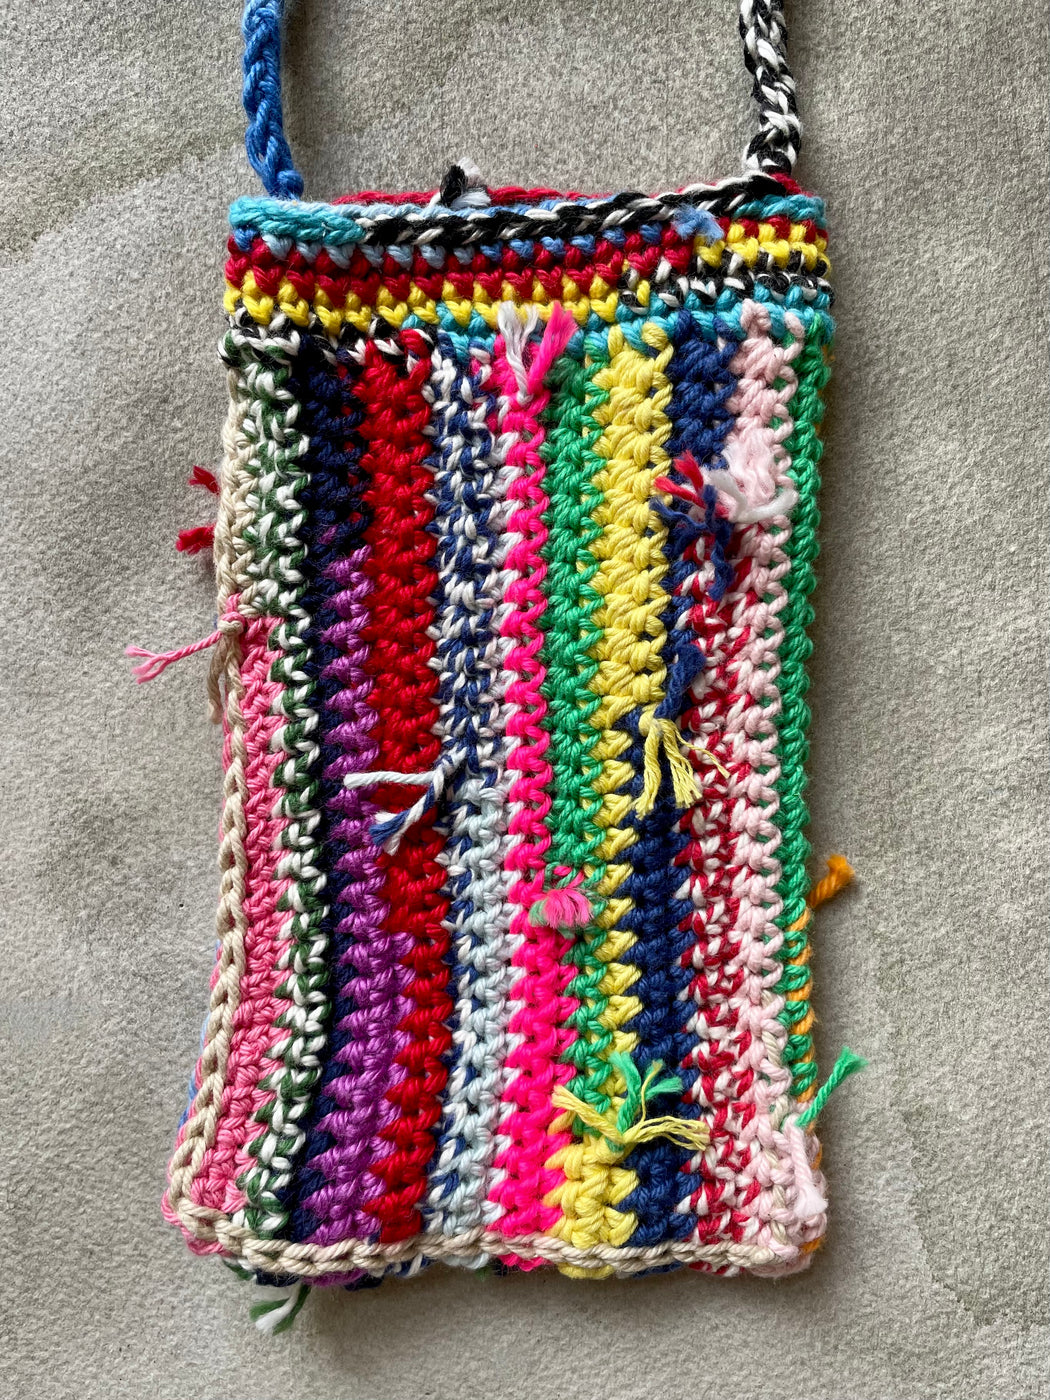 "Scrappy" Hand-Crocheted Little Cross-Body Bag